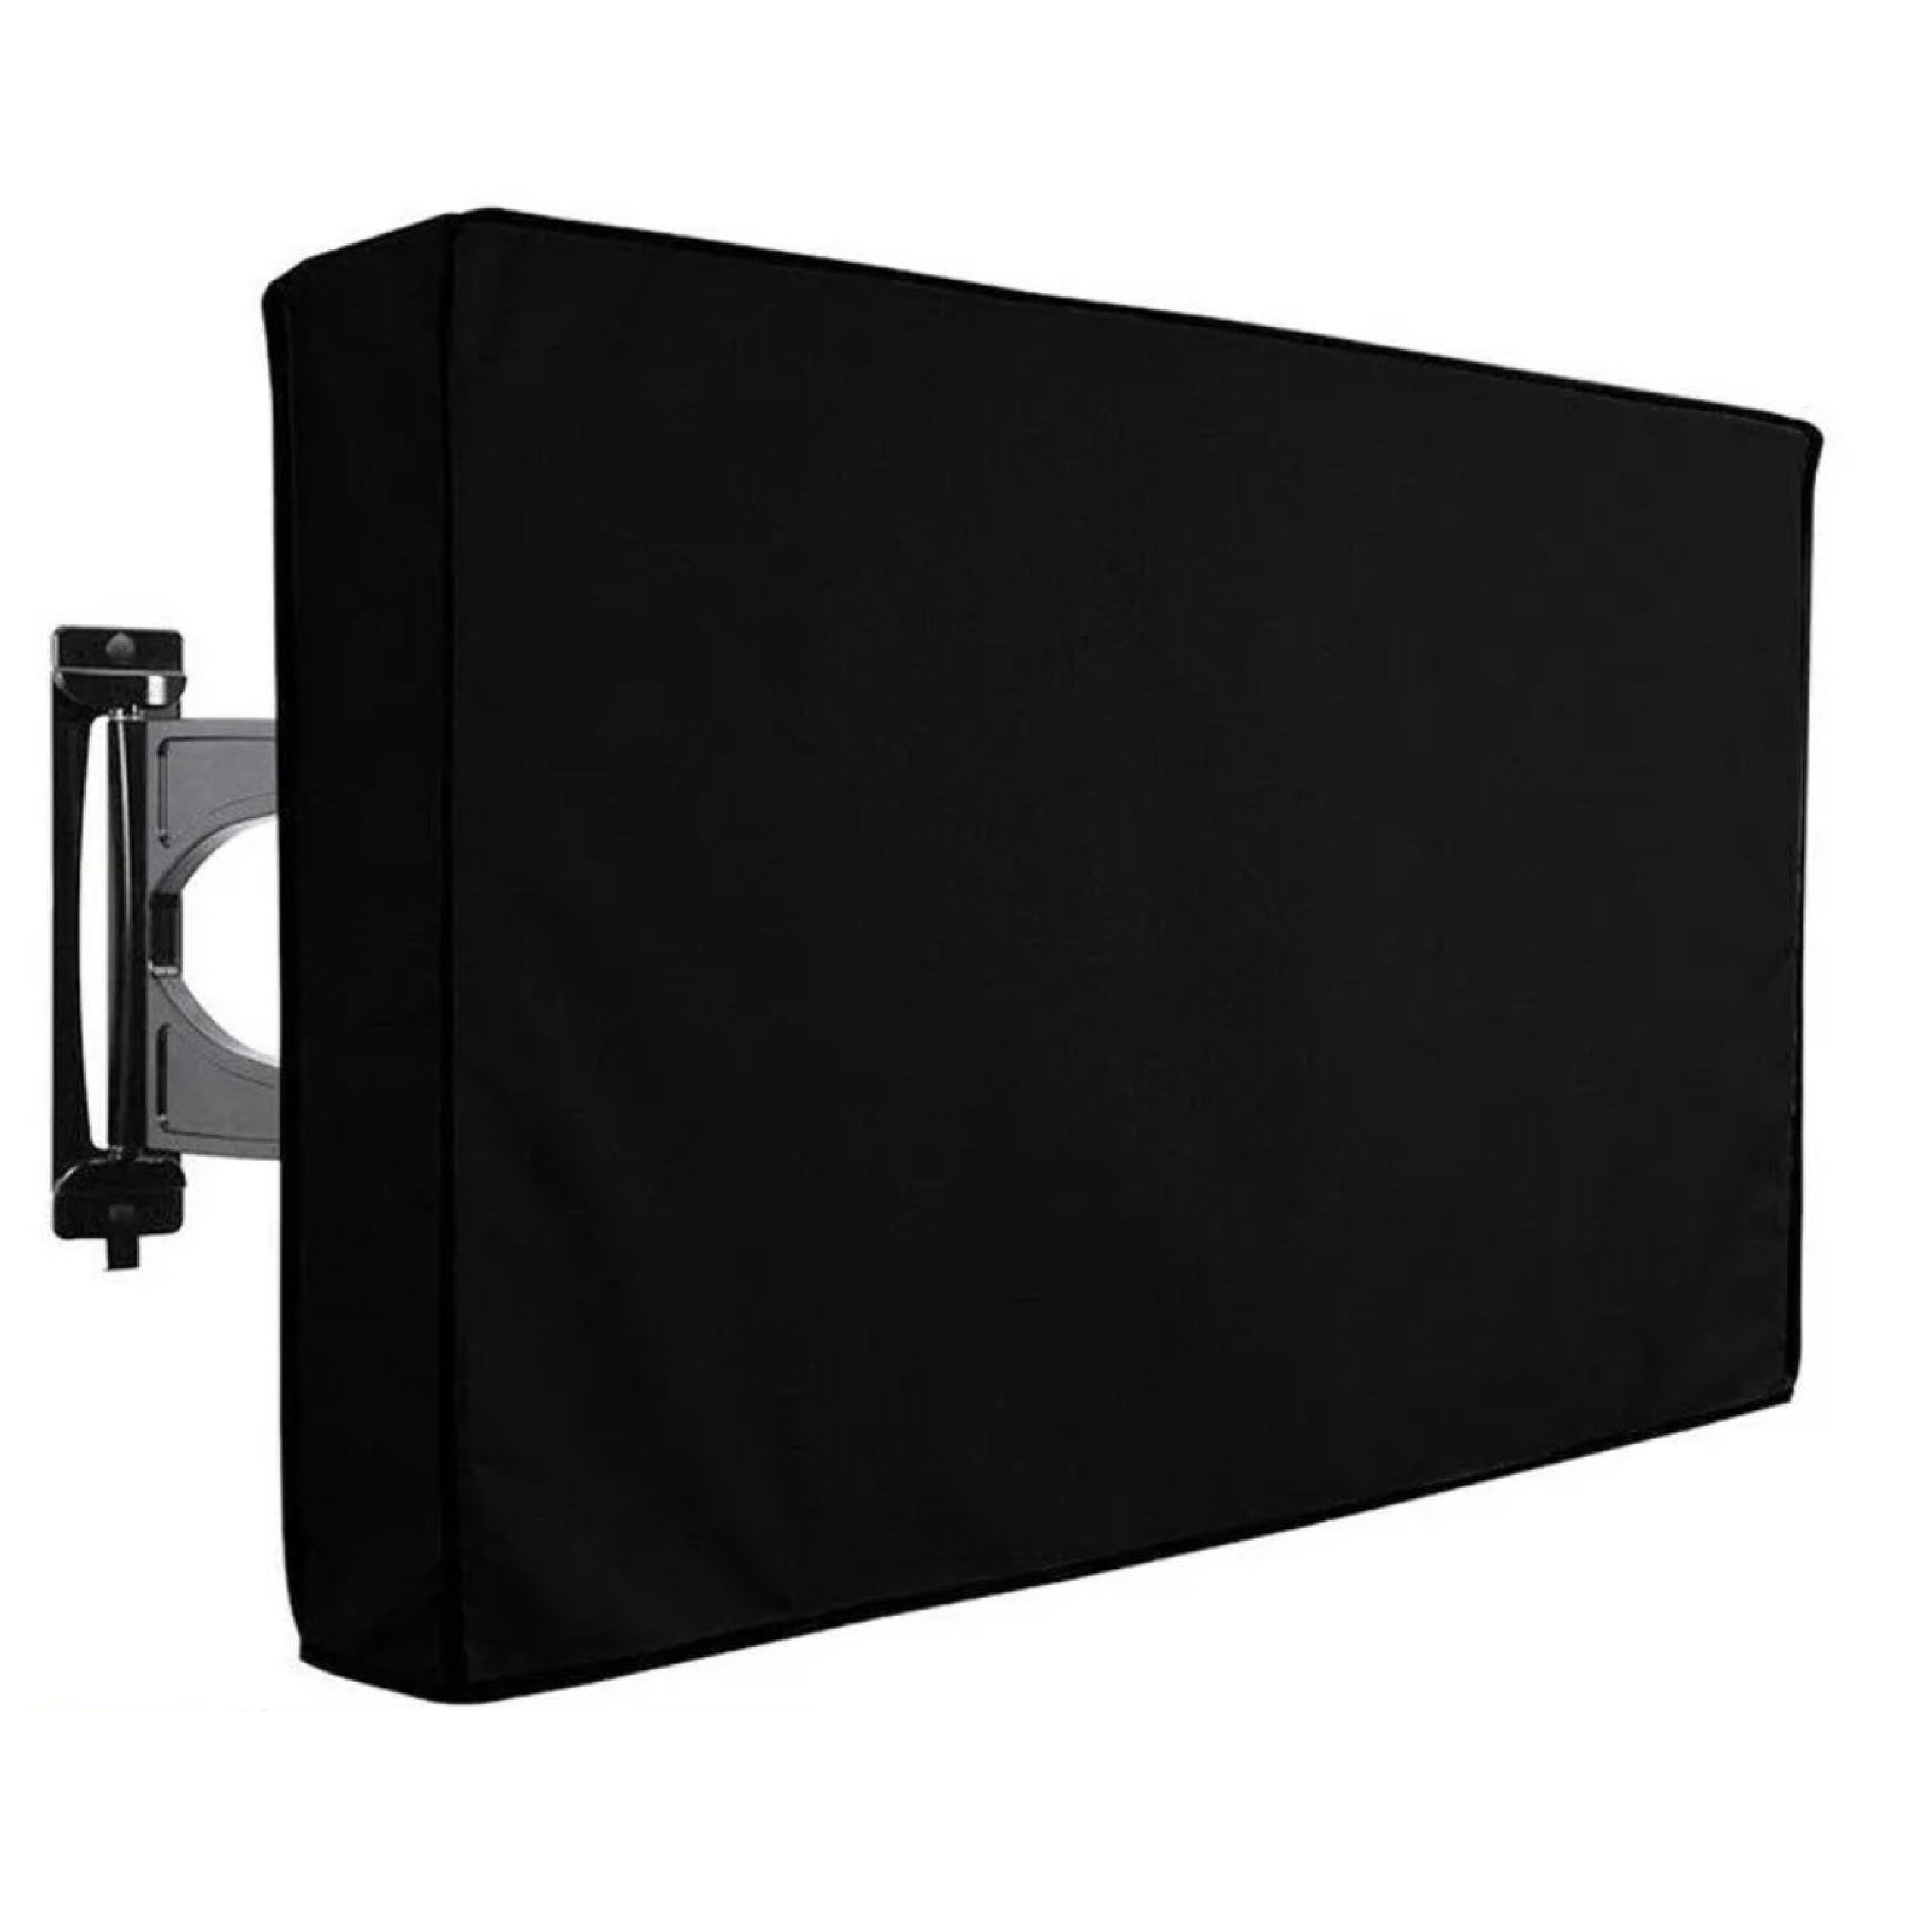 Encuentra el cobertor Samsung para TV de color negro, moderno y el mejor precio solo en Gran Hogar Online.